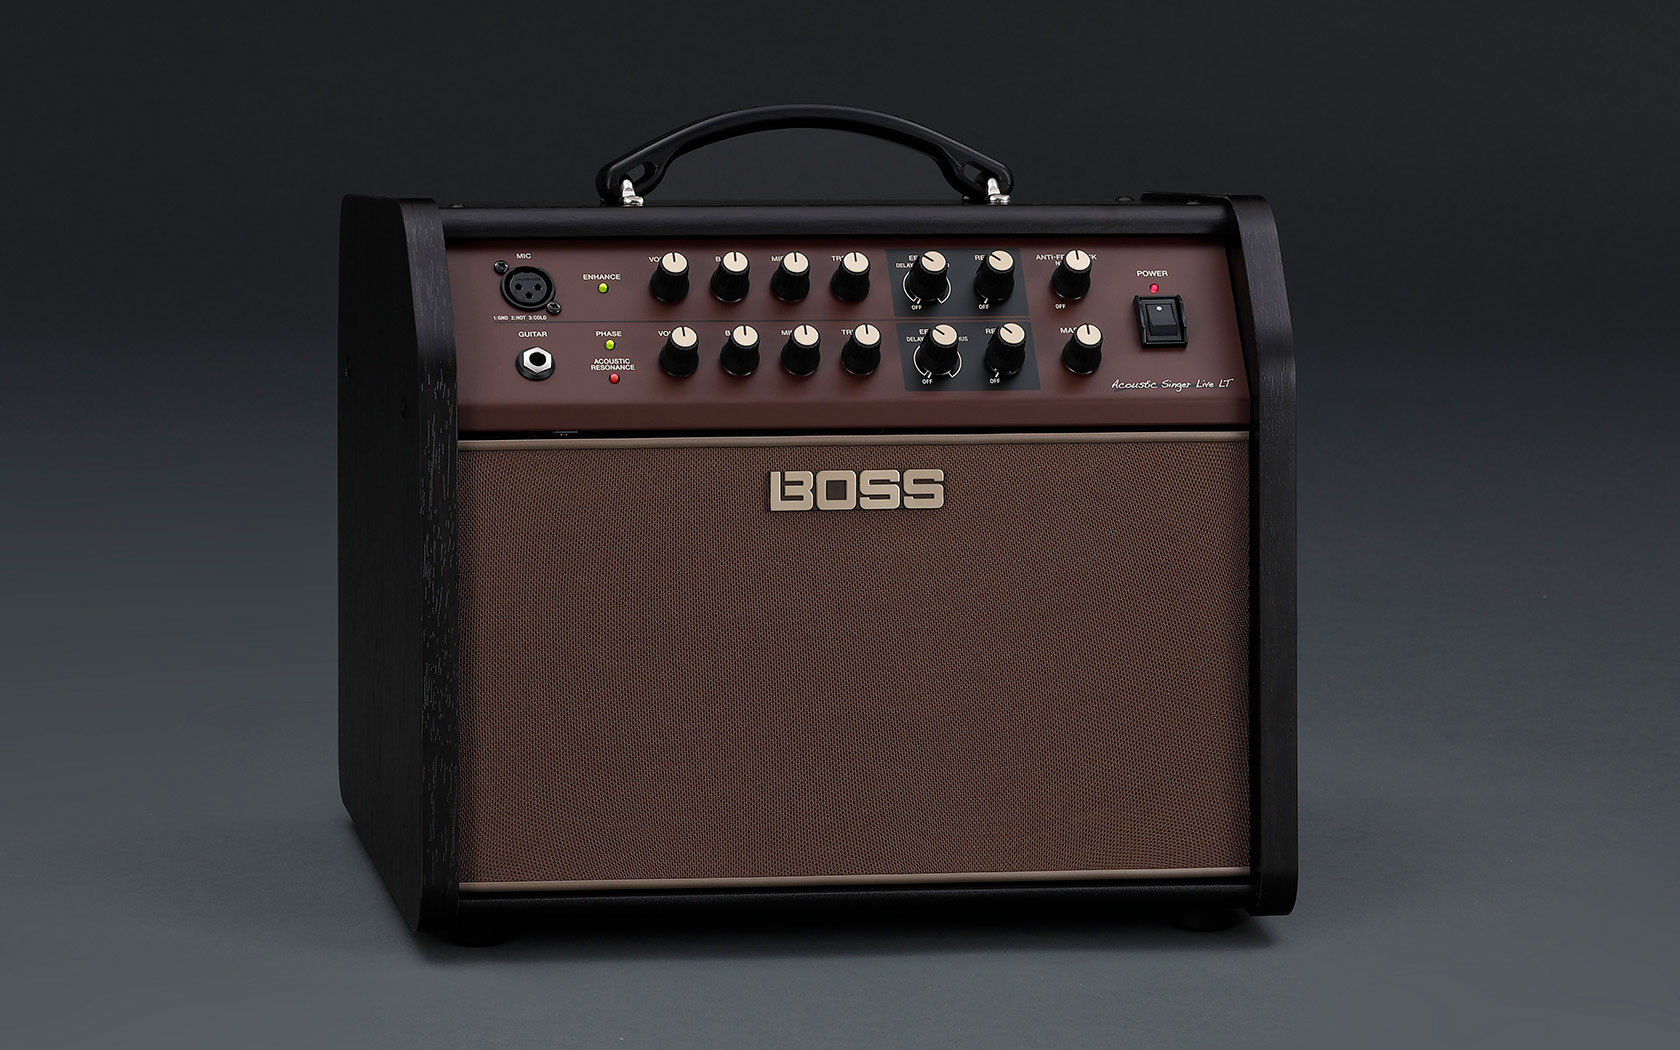 Boss Acoustic Singer Pro ampli guitare acoustique 120 watts